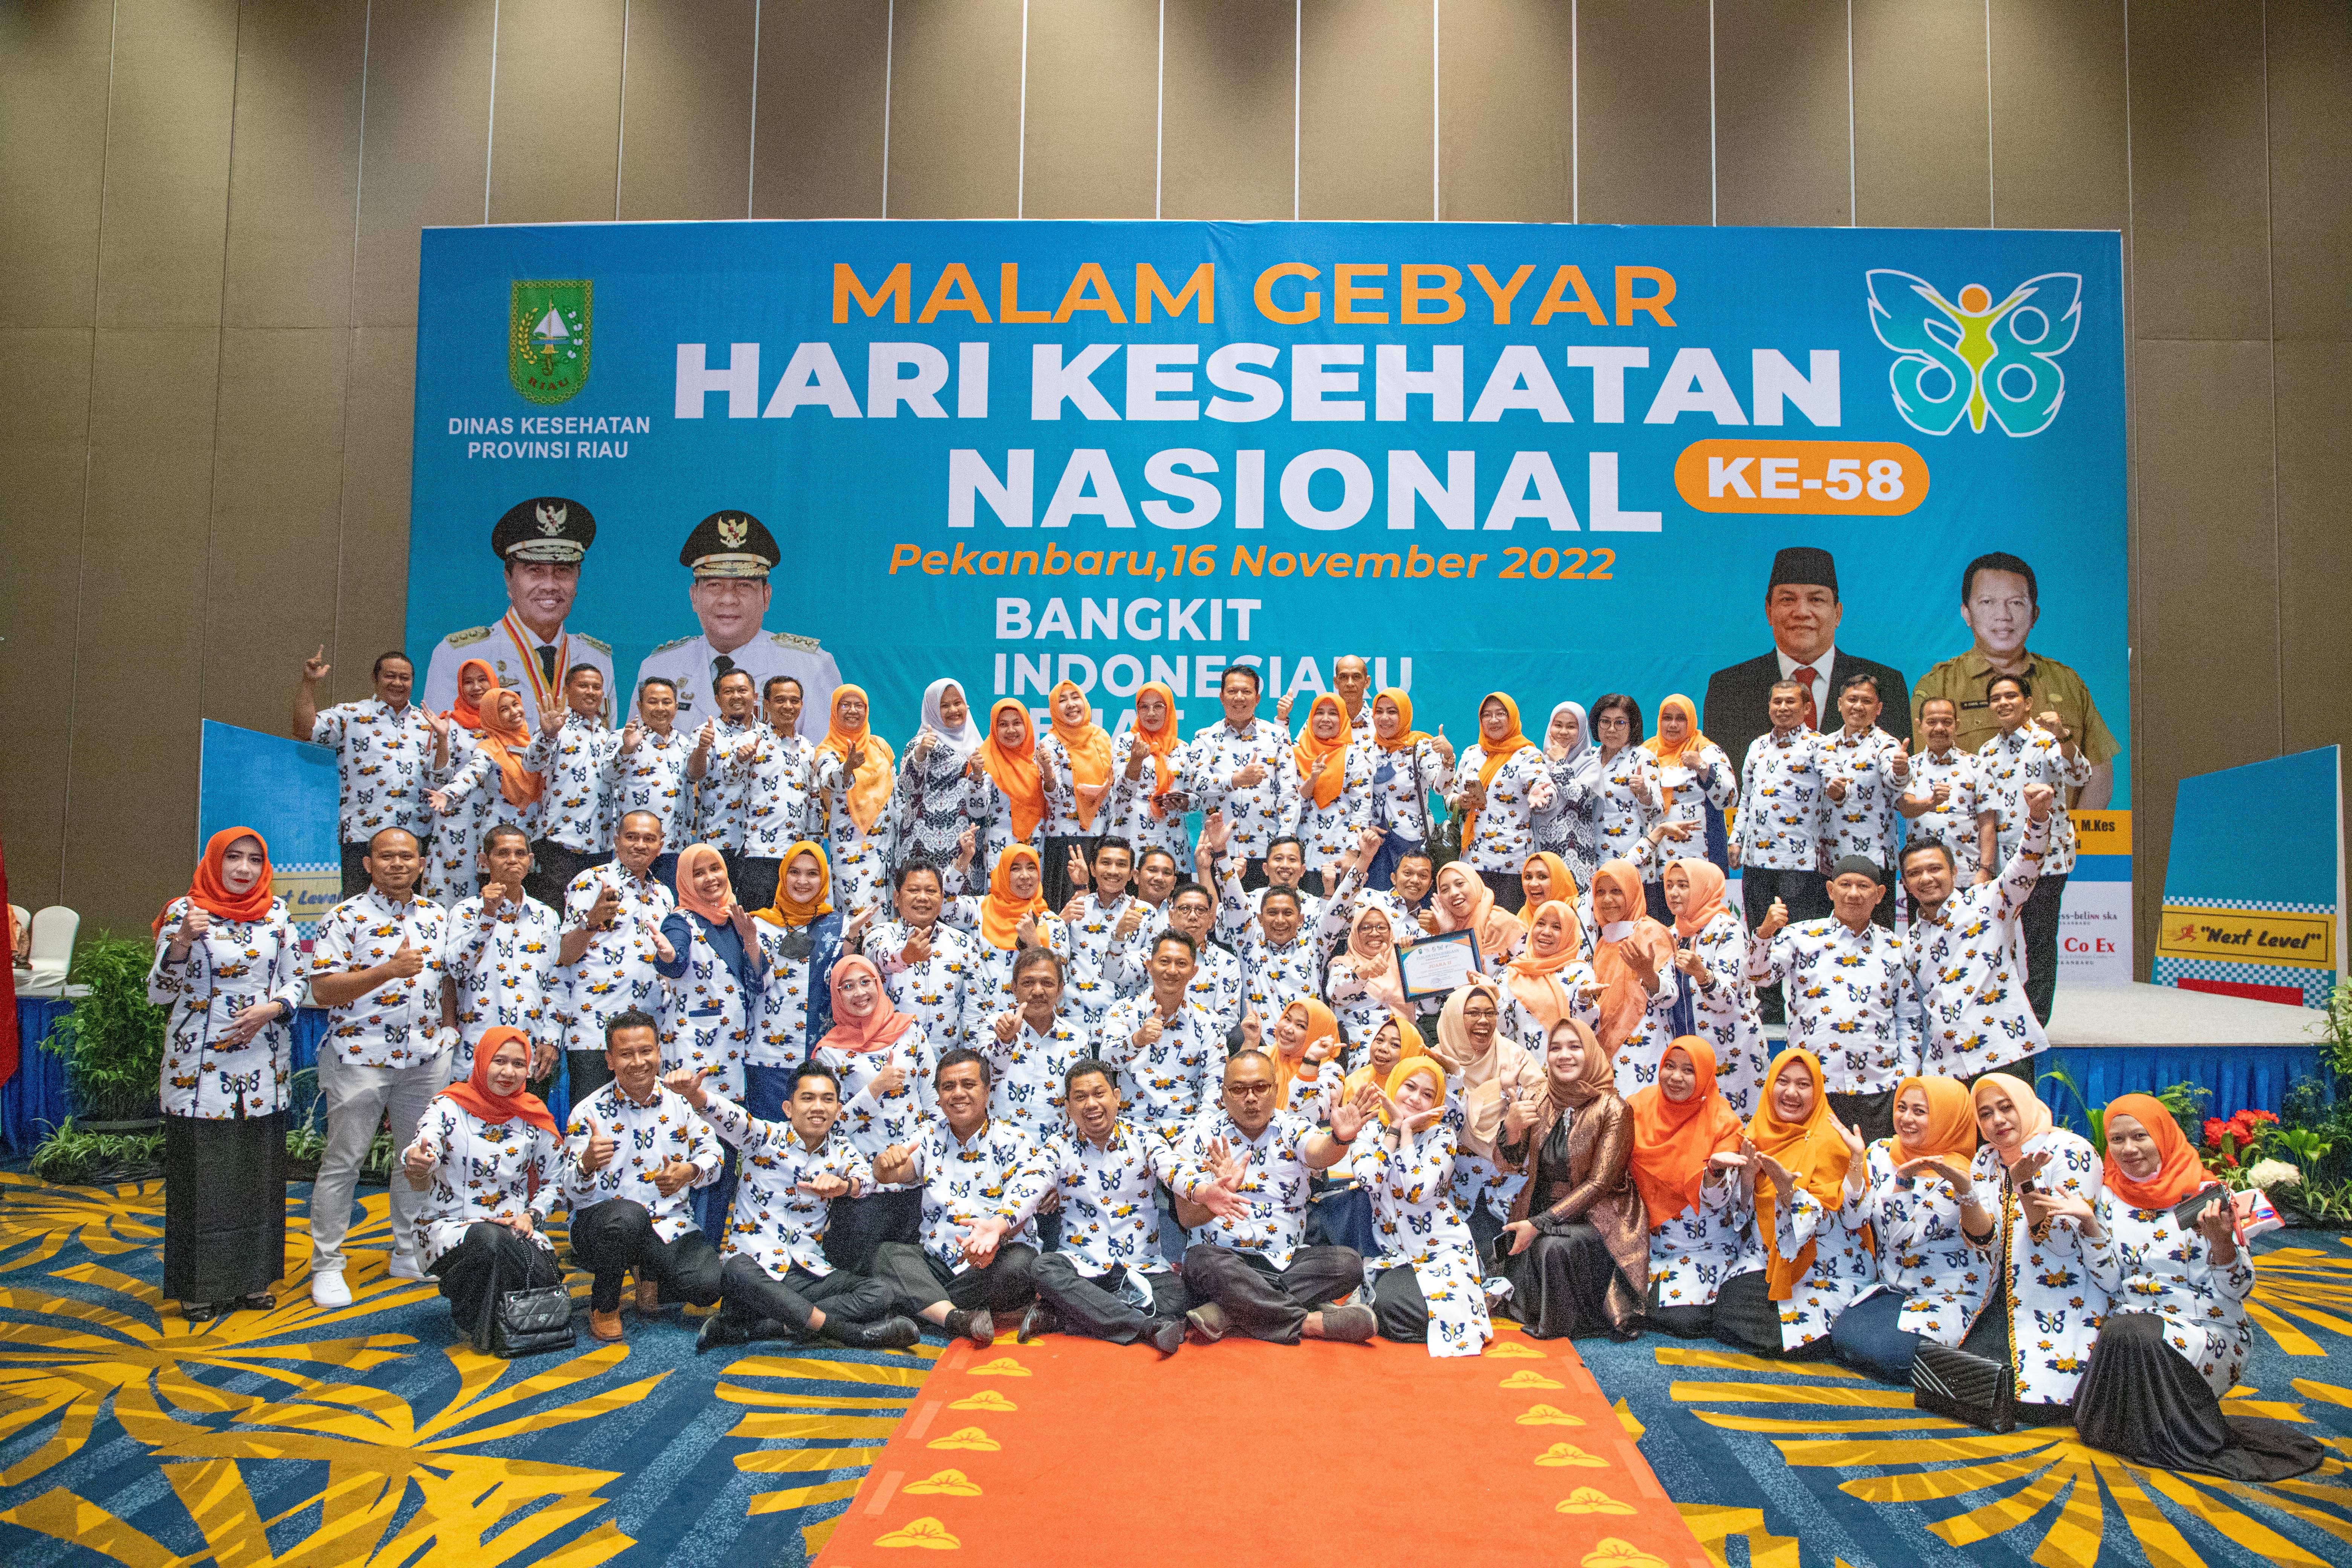 Malam Gebyar Hari Kesehatan Nasional (HKN) ke 58 Tingkat Provinsi Riau